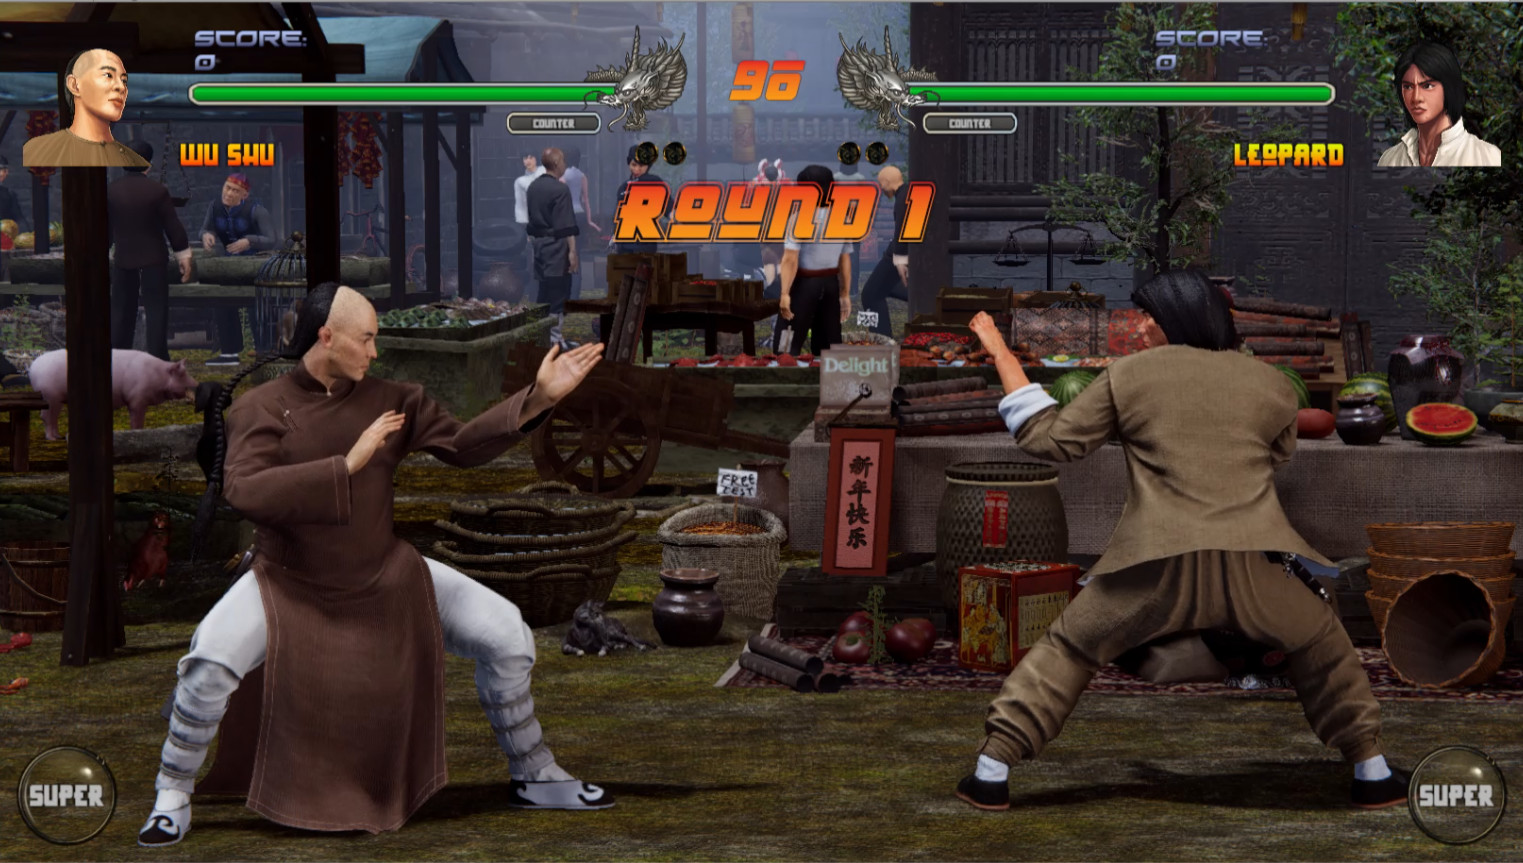 格斗游戏《少林vs武当2》上架Steam平台 自带简体中文